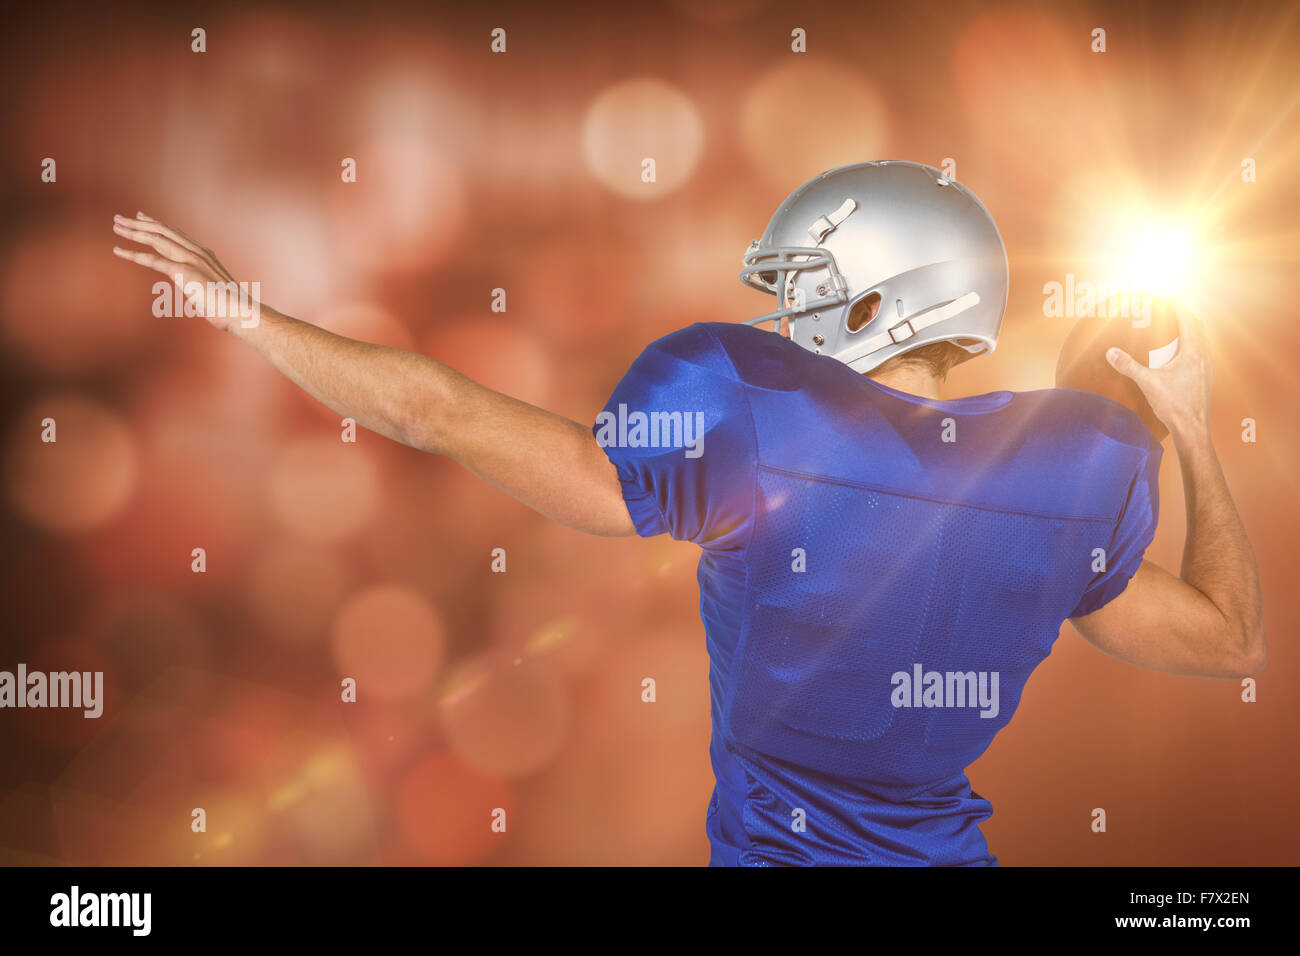 Immagine composita della vista posteriore del giocatore di football americano gettando la sfera Foto Stock